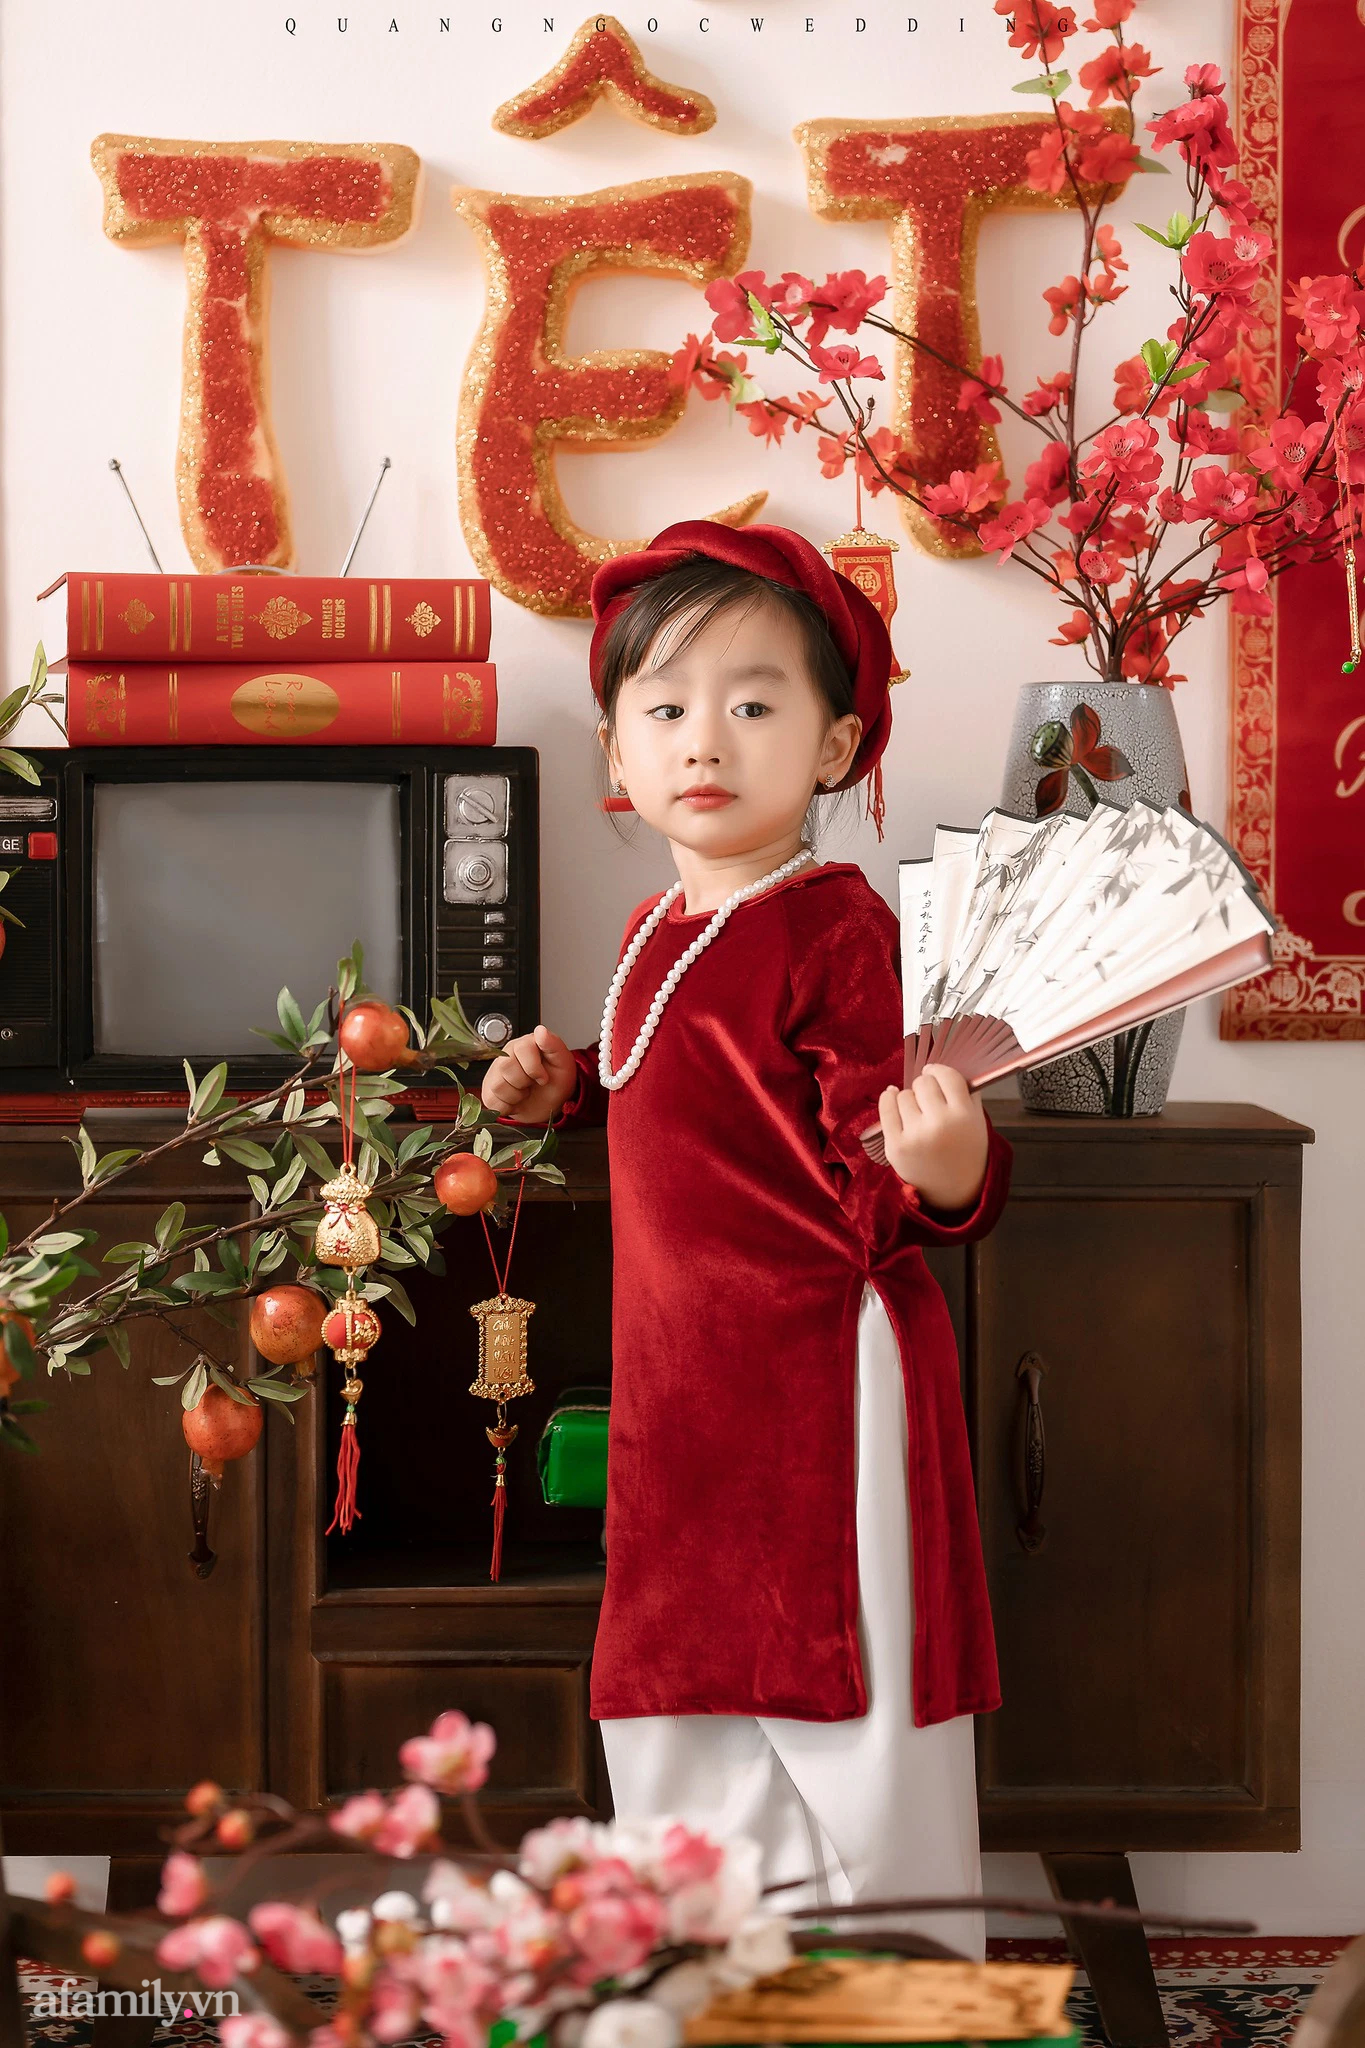 Lấy cảm hứng từ truyền thống áo dài của người Việt, các bộ ảnh áo dài Tết cho bé gái thật xinh đẹp và tinh tế. Chất liệu cao cấp kết hợp với nét trẻ trung sẽ làm nên một phong cách thật cuốn hút cho các bé trong mùa Tết này.